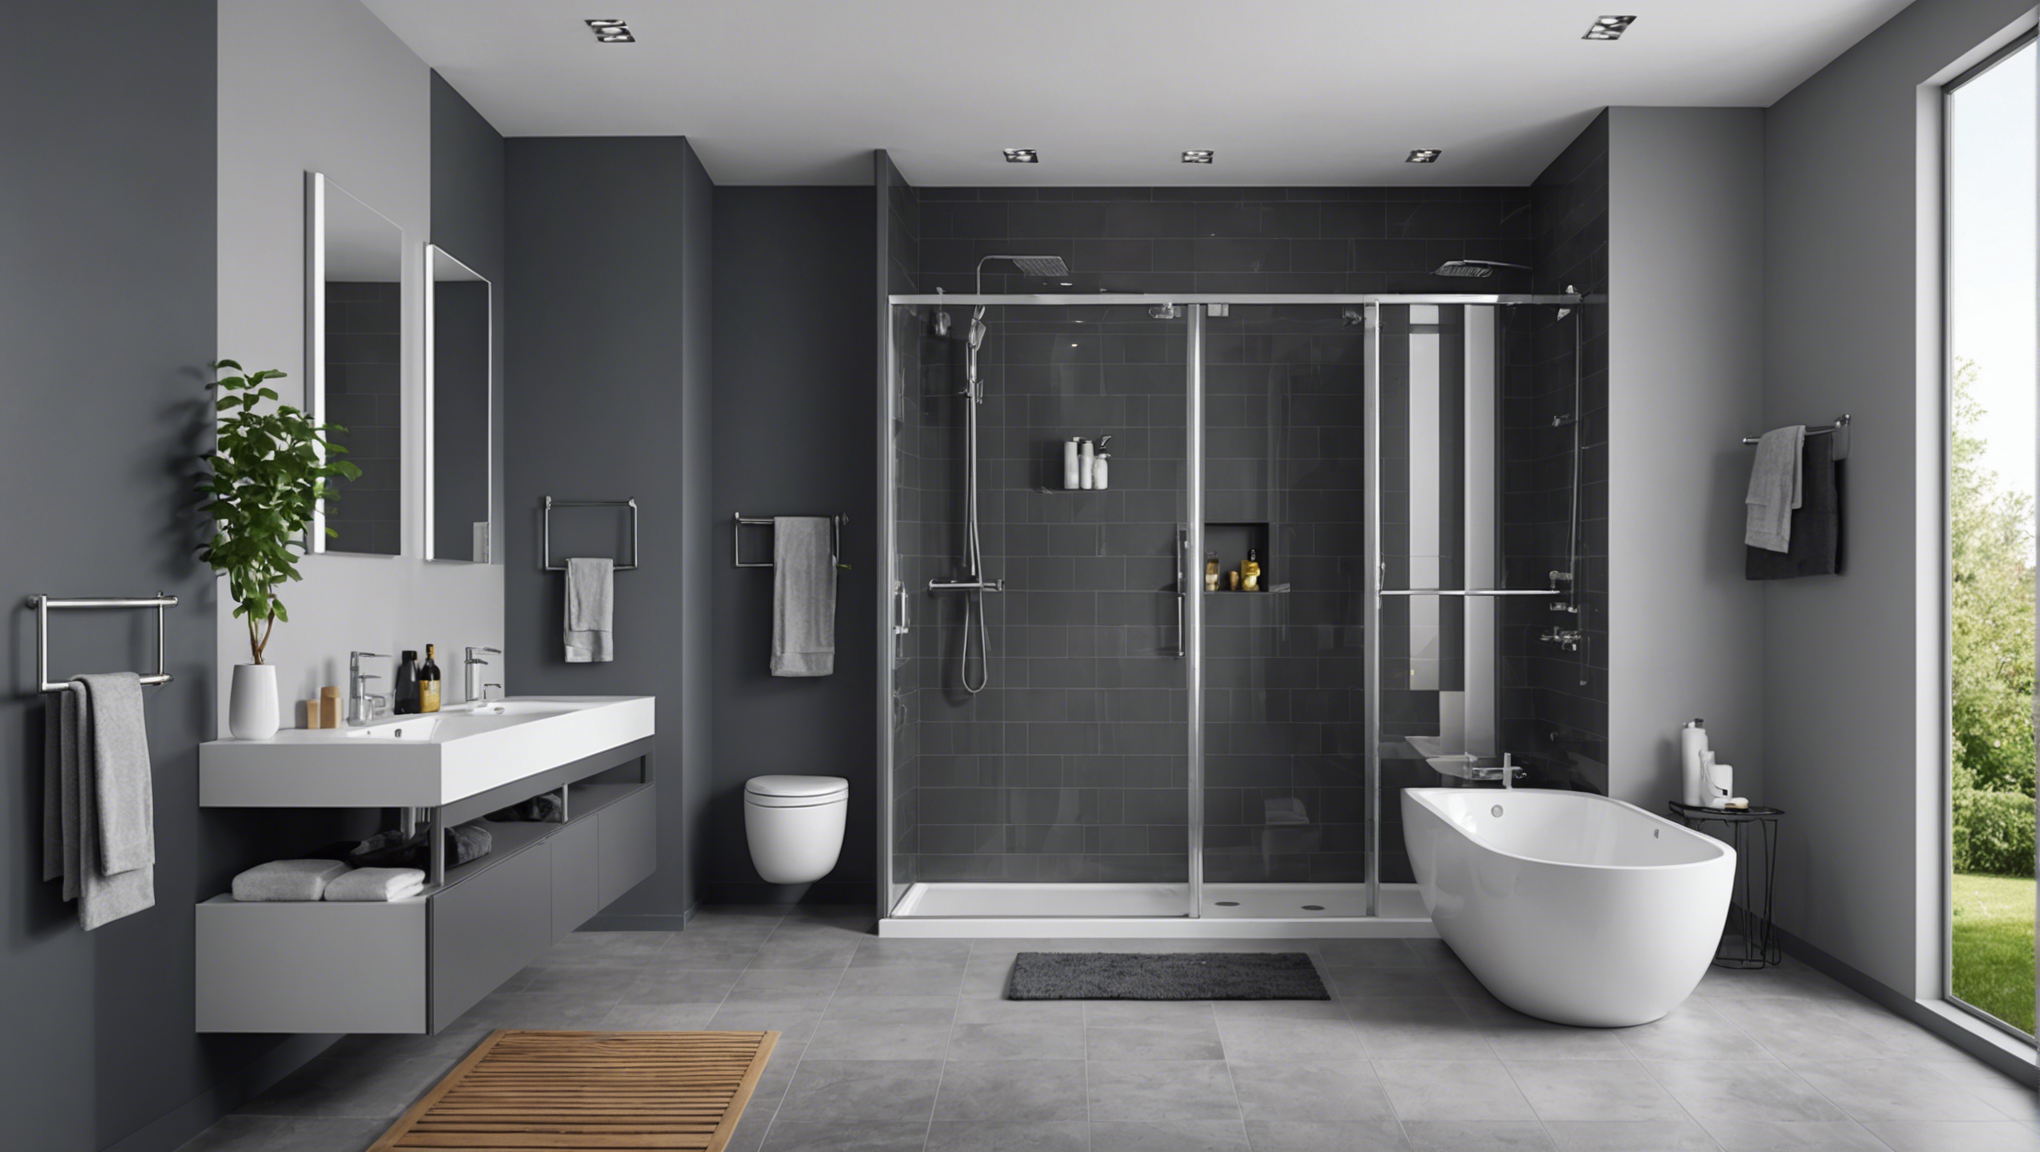 découvrez comment choisir le revêtement de sol idéal pour une salle de bain moderne et pratique. conseils et astuces pour une atmosphère élégante et fonctionnelle.